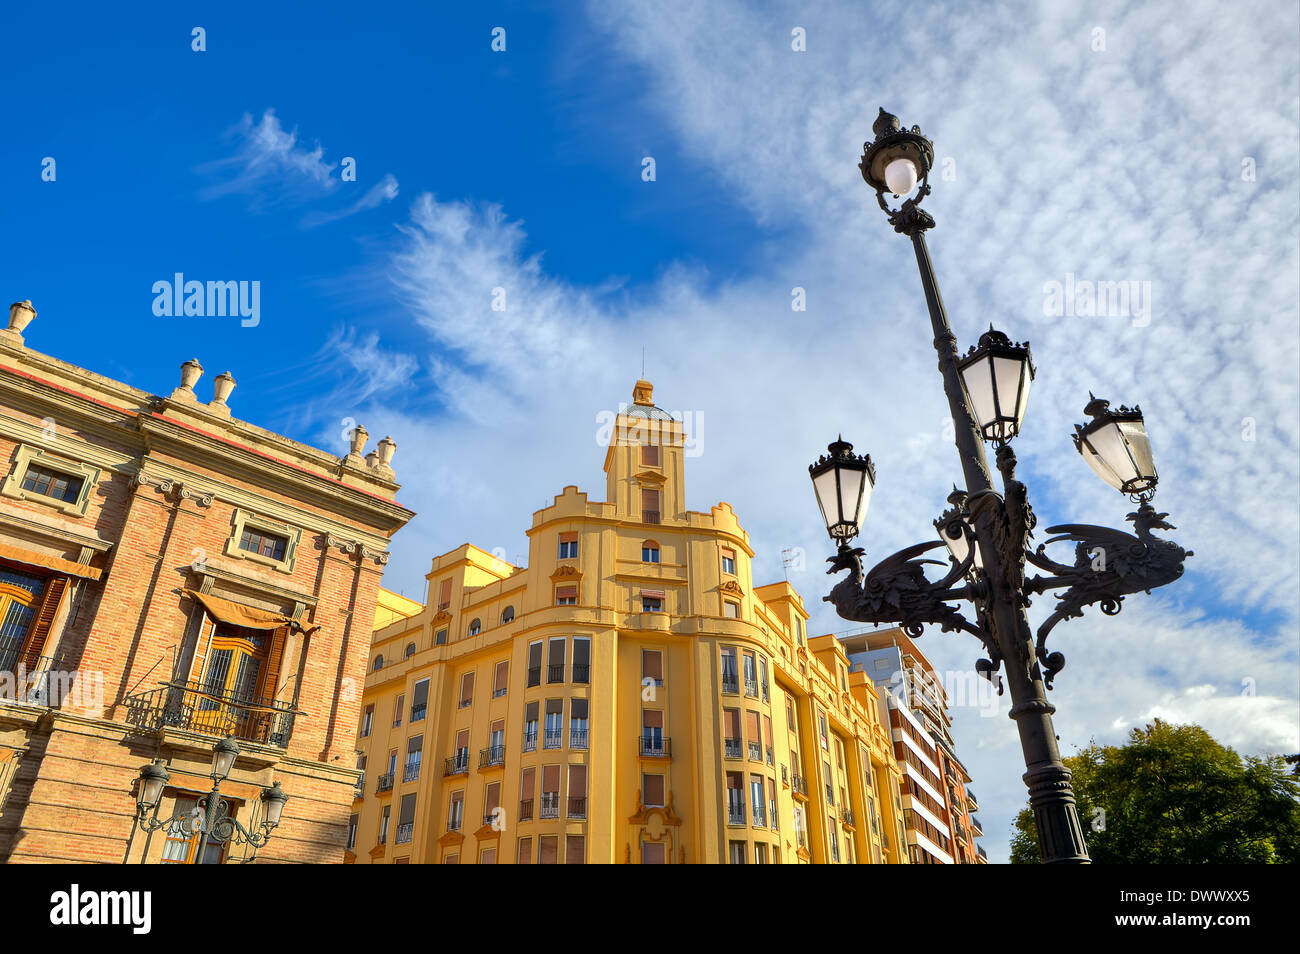 Typische Ciencias Laternenpfahl und bunten Gebäude im Hintergrund unter schönen Himmel in Valencia, Spanien. Stockfoto